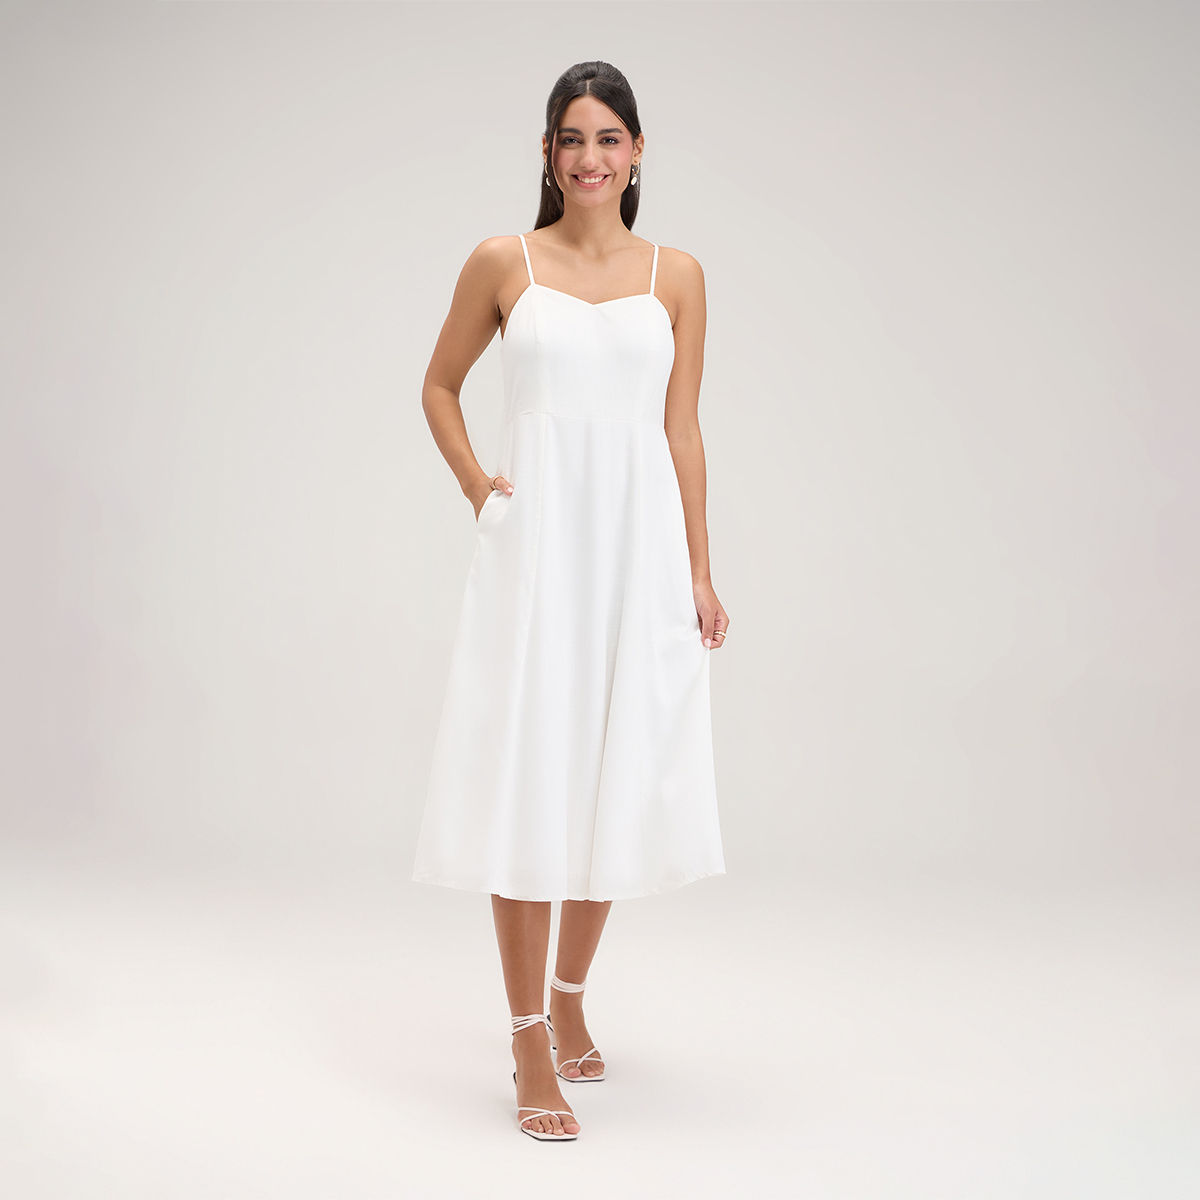 So Stunning White Backless Midi Dress | Midi dress bodycon, White backless  dress, White midi dress bodycon